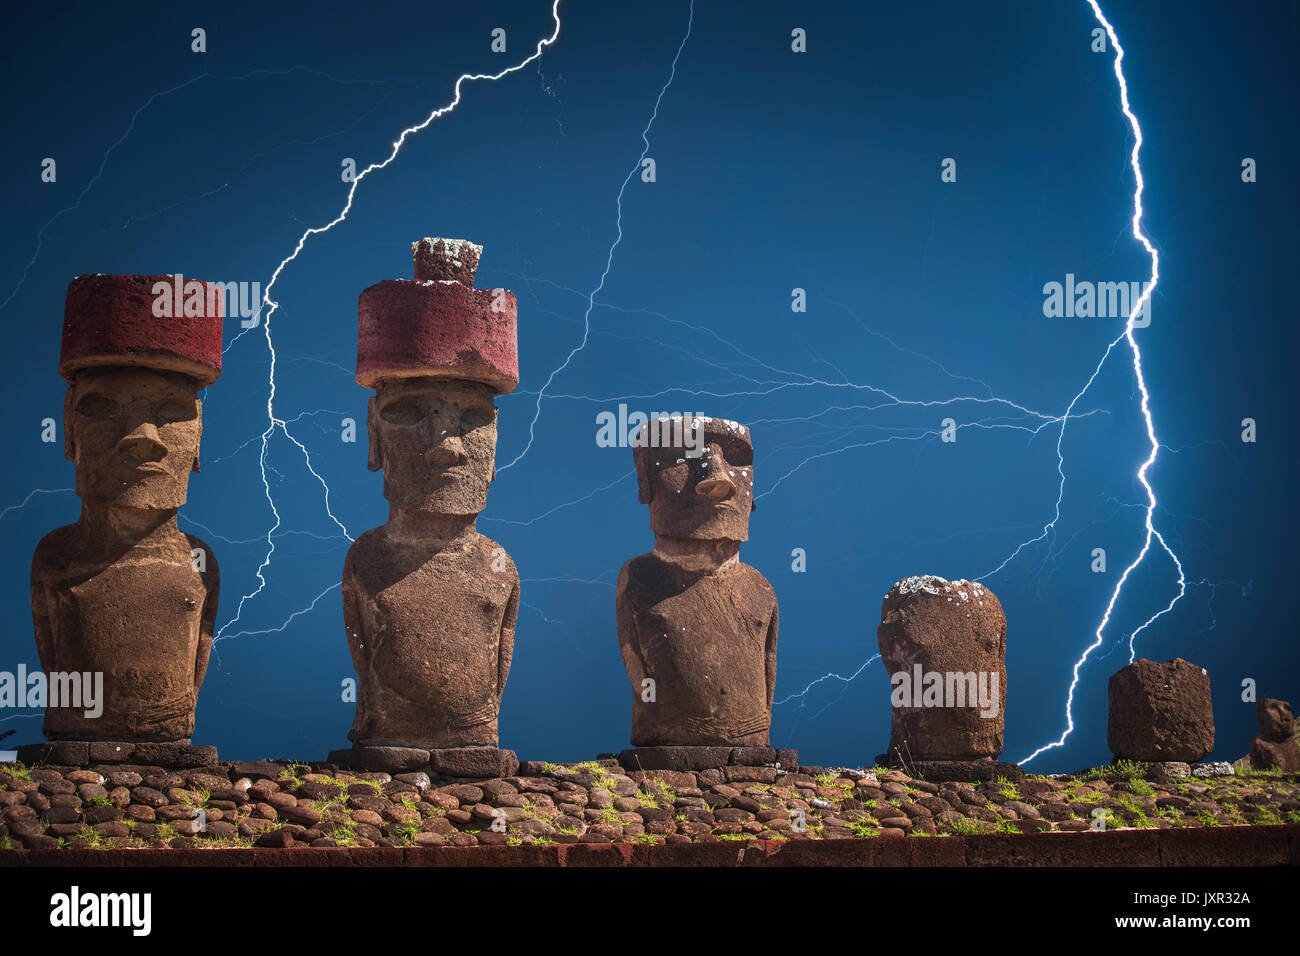 Forti tuoni e lampi potente del fulmine. Una statua sull isola di pasqua o Rapa Nui nel Pacifico sud-orientale, il territorio del Cile. Foto Stock